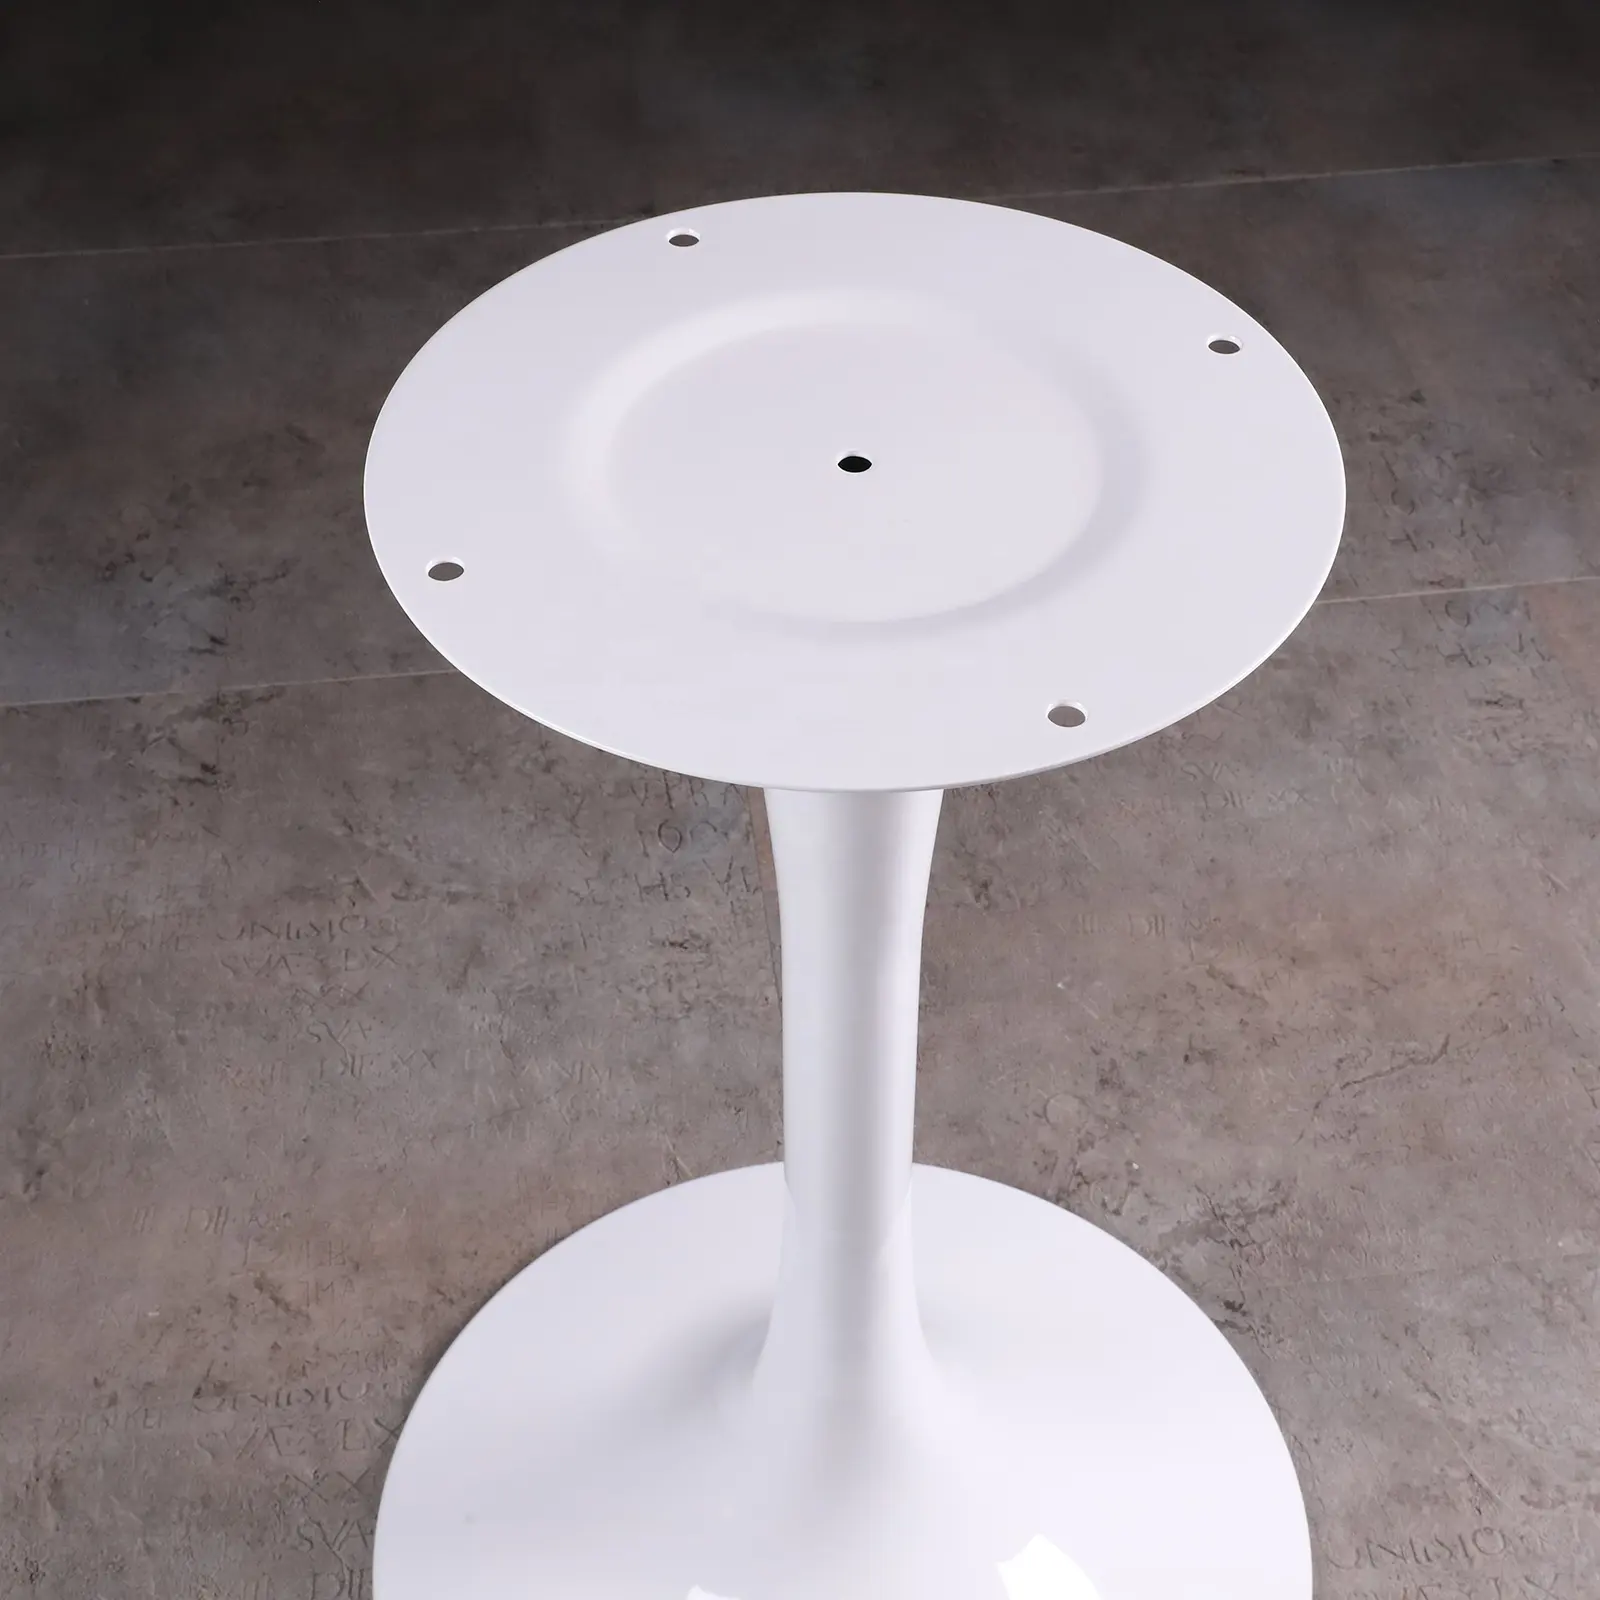 Современная мебель оборудование тюльпан дизайн металлическая литая рама 50 шасси железные ножки журнальный столик